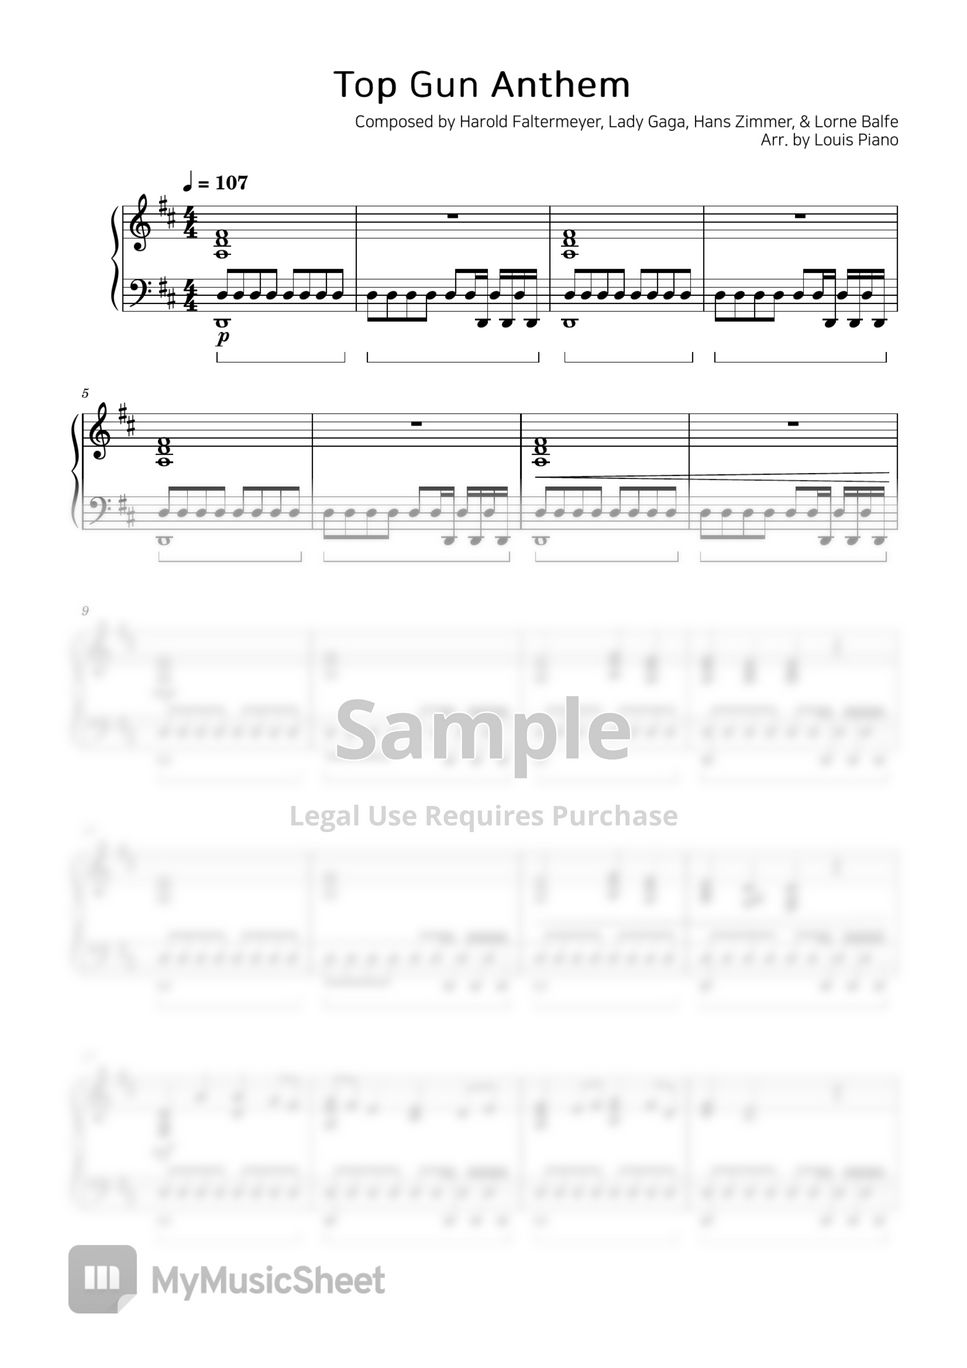 Harold Faltermeyer, Lady Gaga, Hans Zimmer, & Lorne Balfe - Top Gun Anthem by LOUIS PIANO